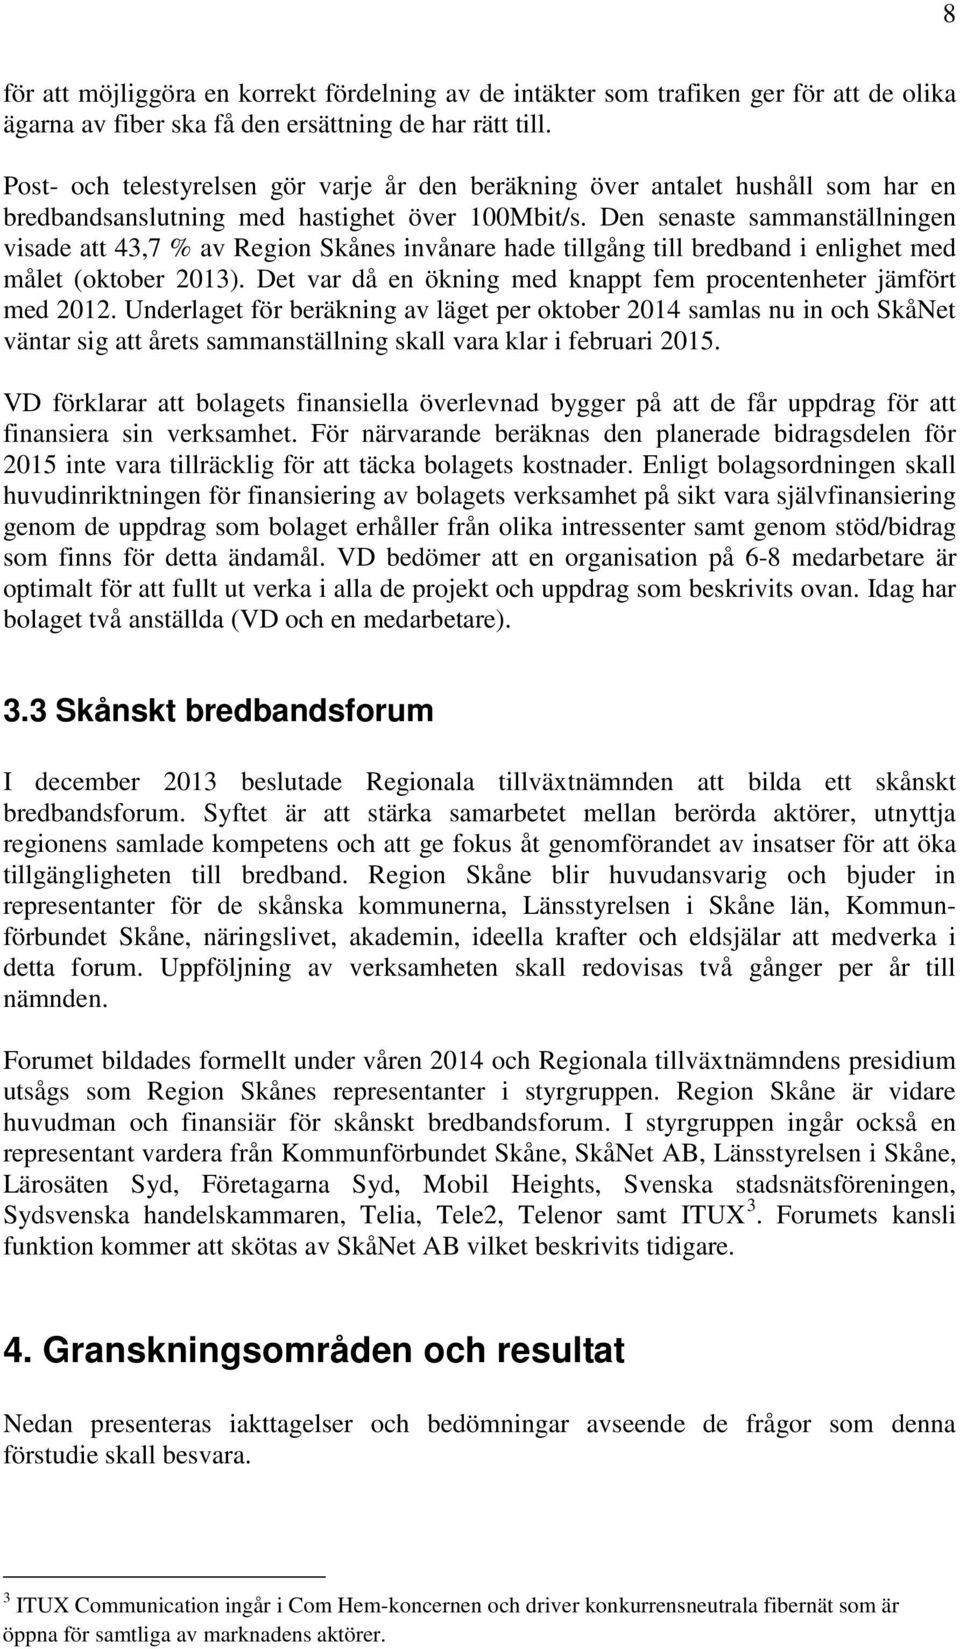 Den senaste sammanställningen visade att 43,7 % av Region Skånes invånare hade tillgång till bredband i enlighet med målet (oktober 2013).